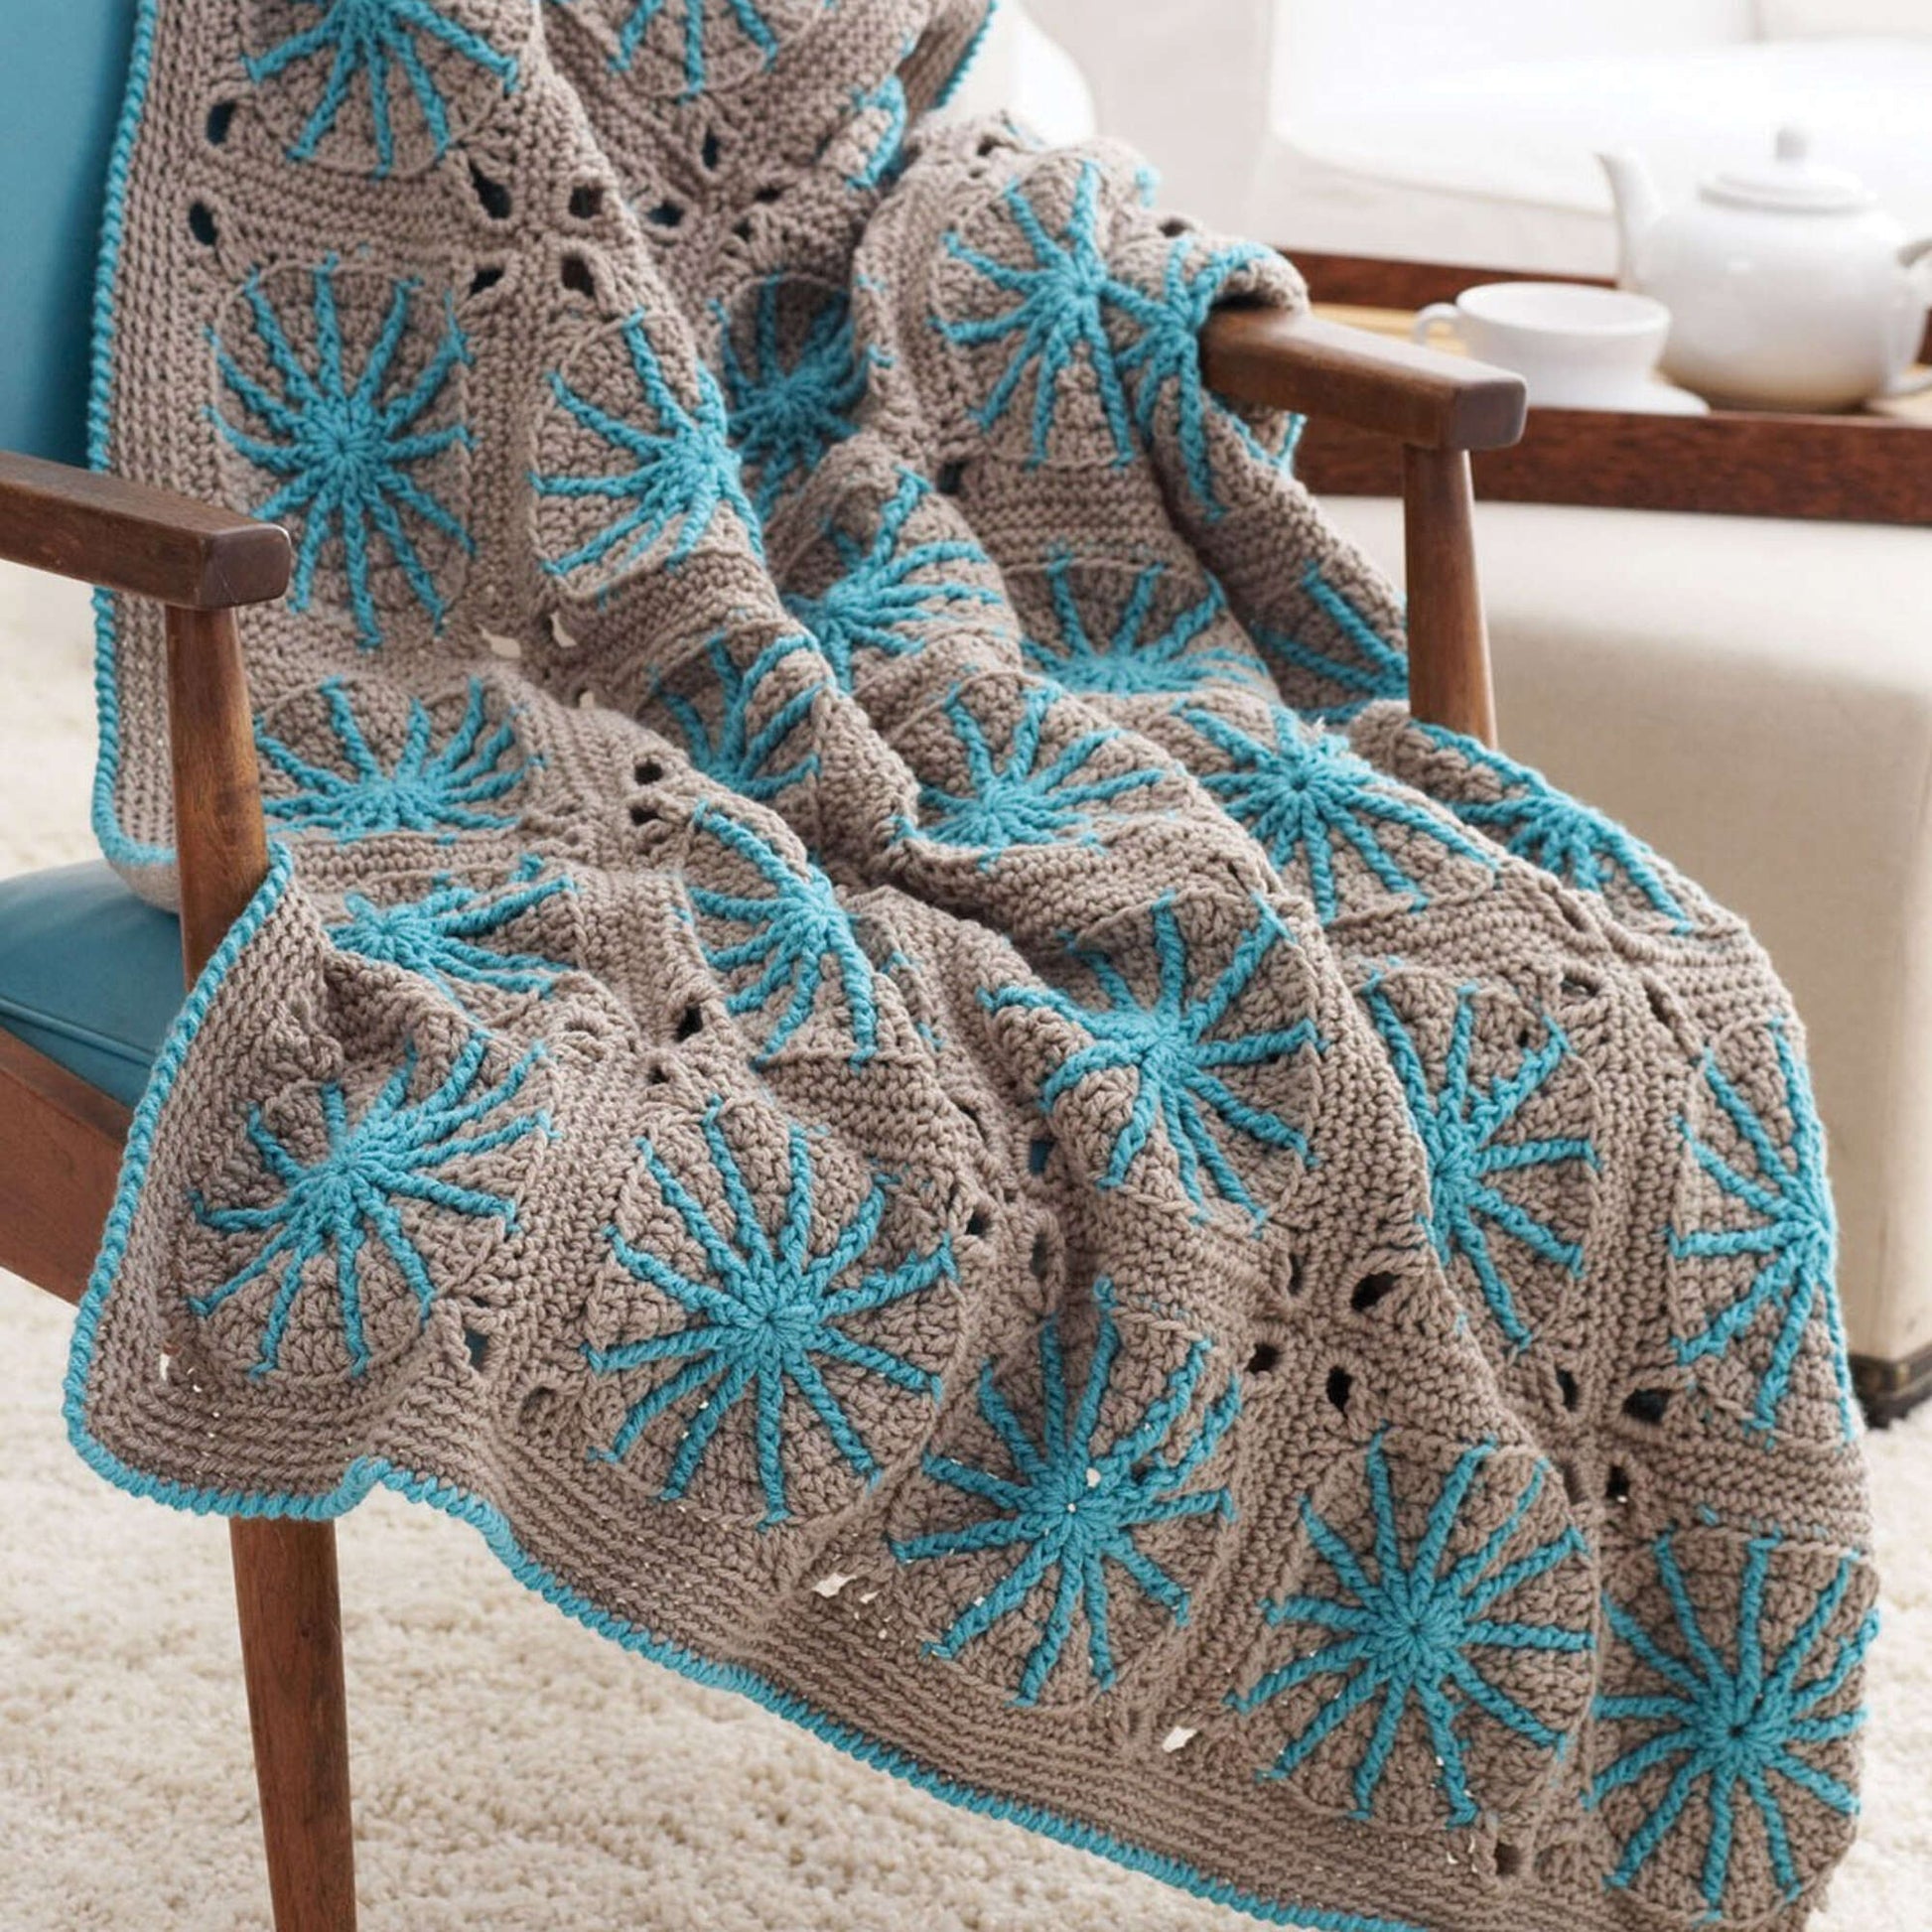 Bernat Starburst Crochet Blanket Single Size